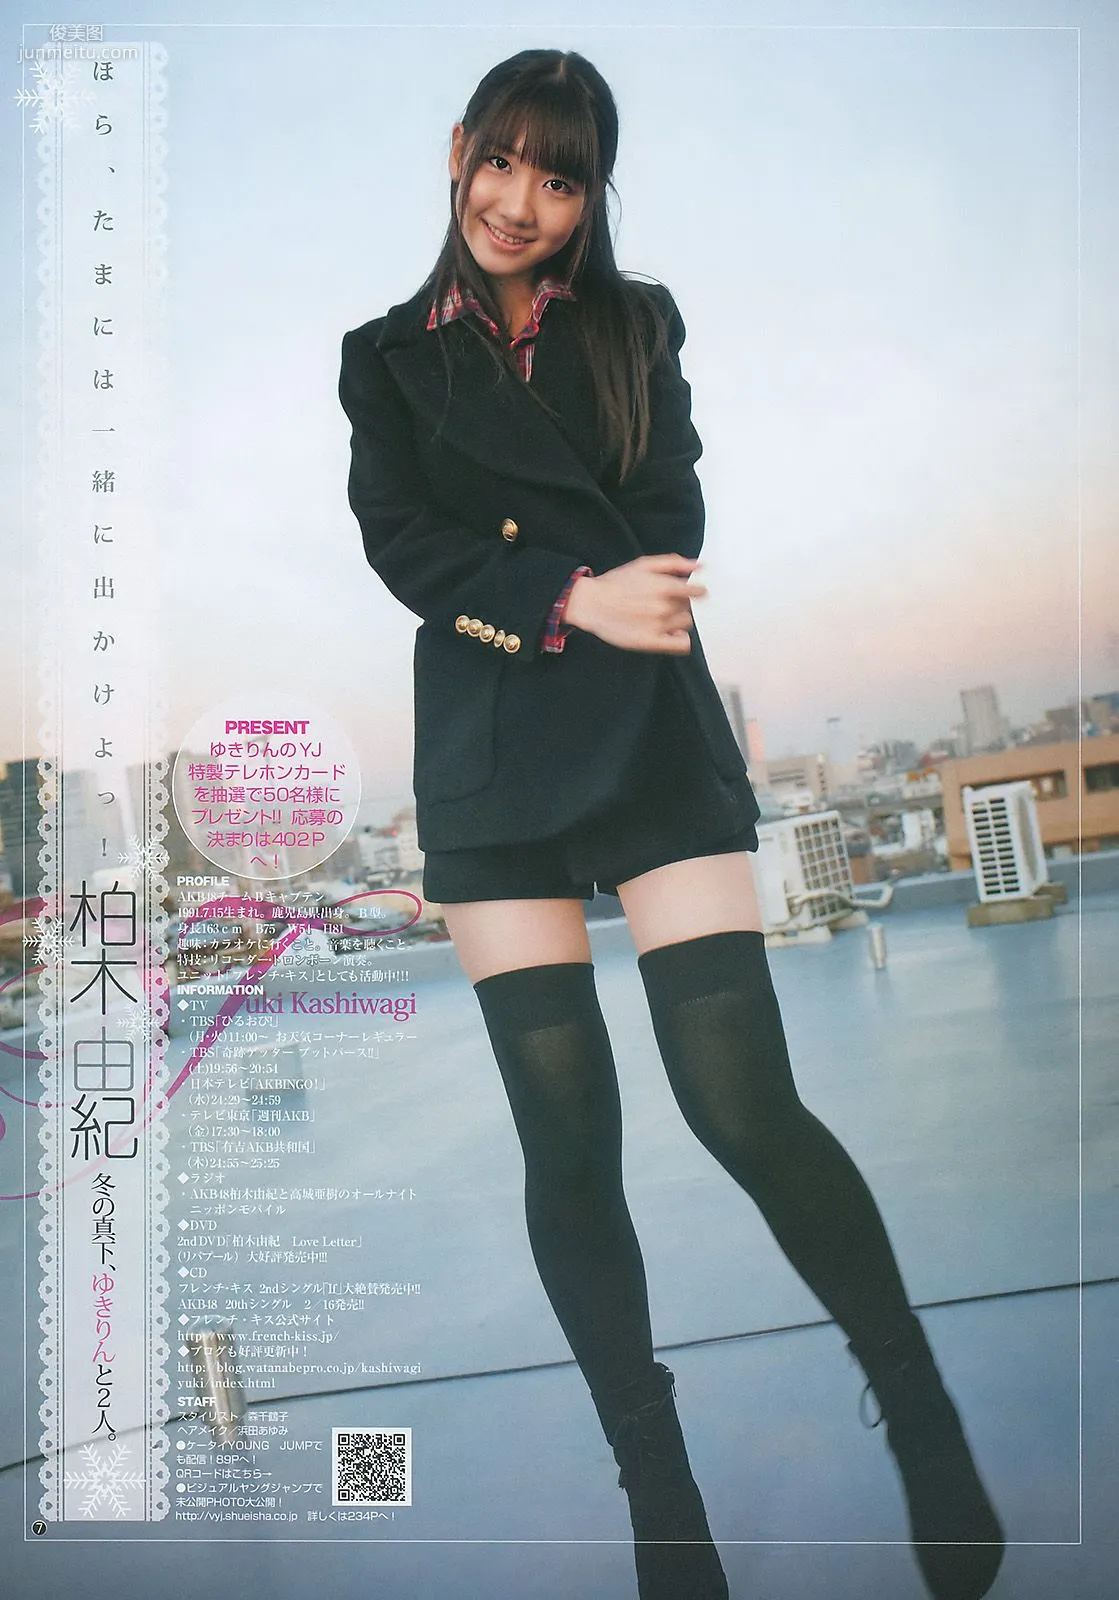 柏木由紀 竹富聖花 [Weekly Young Jump] 2011年No.08 写真杂志8